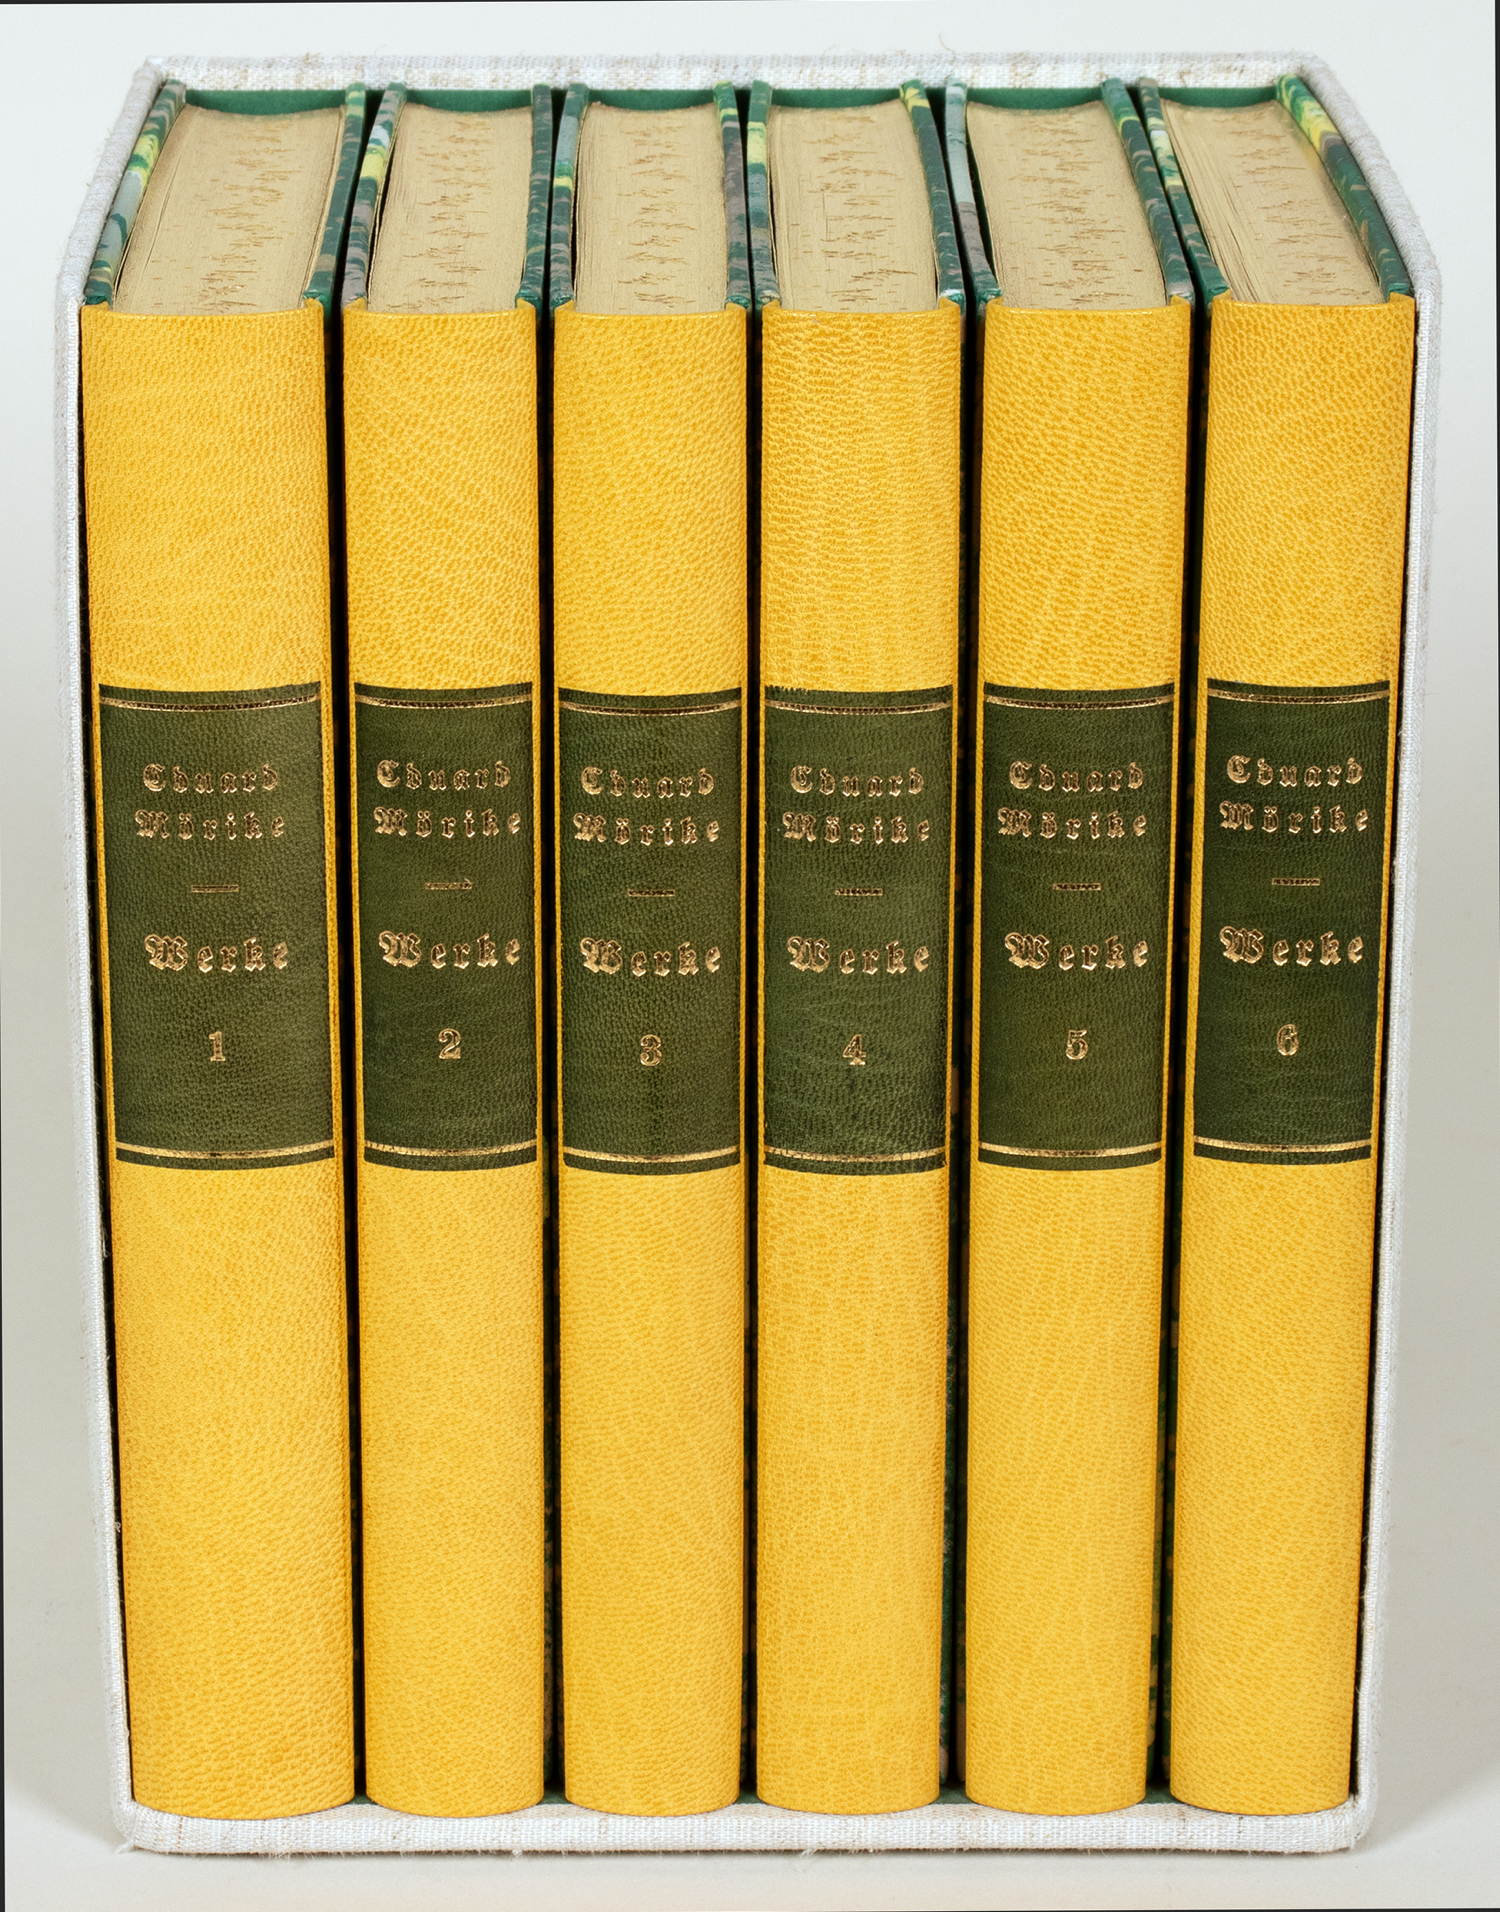 Einbände - Sechs gelbe Halbfranzbände, signiert »R. Meuter Ascona«, mit mit oliv-goldenem Rückenschi